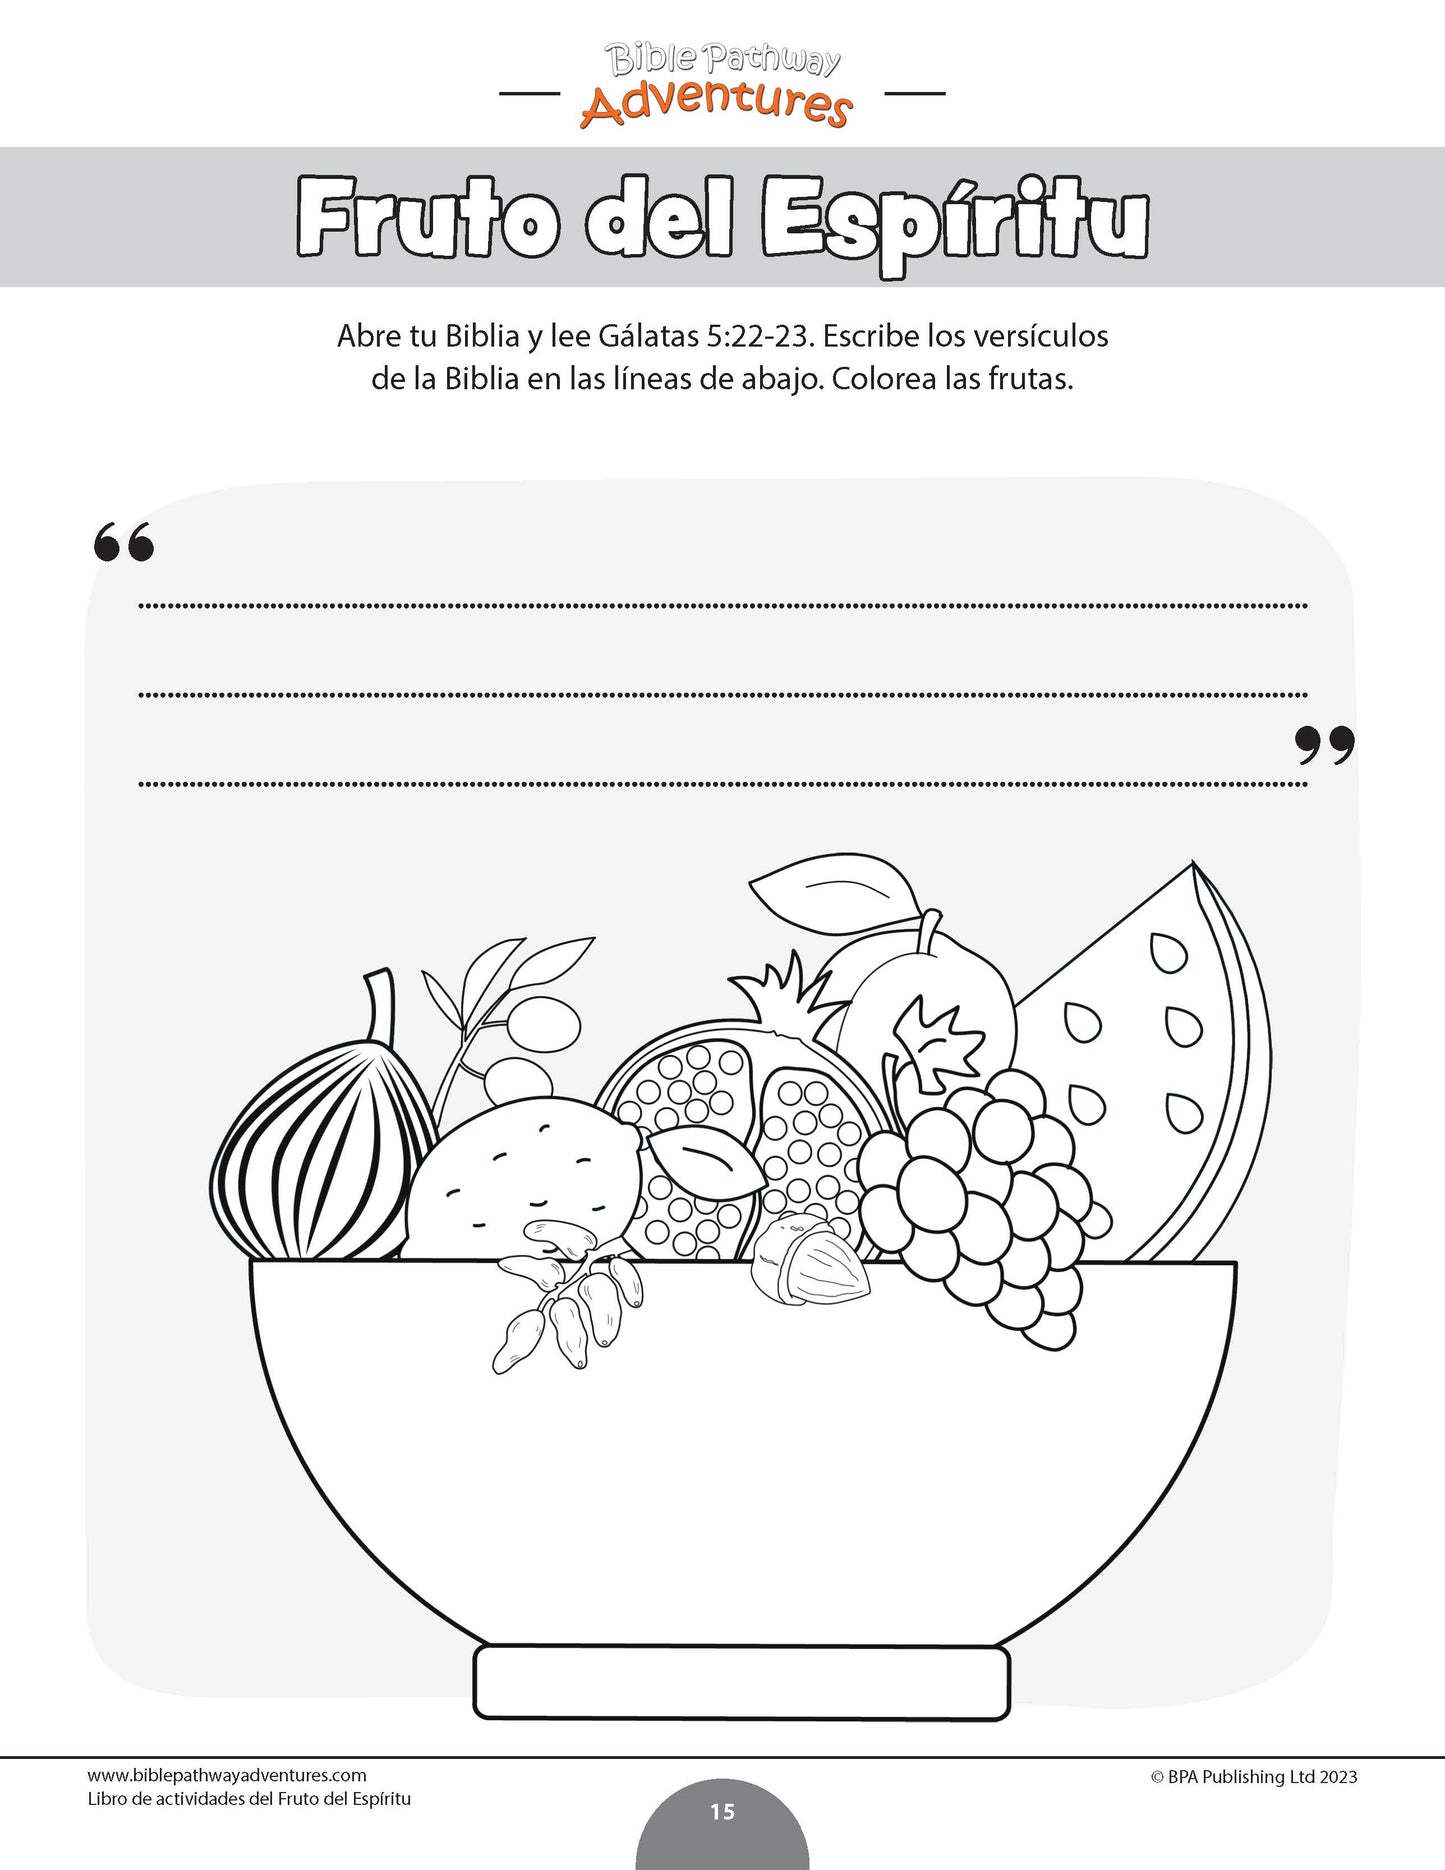 Libro de actividades del Fruto del Espíritu: Paciencia (PDF)